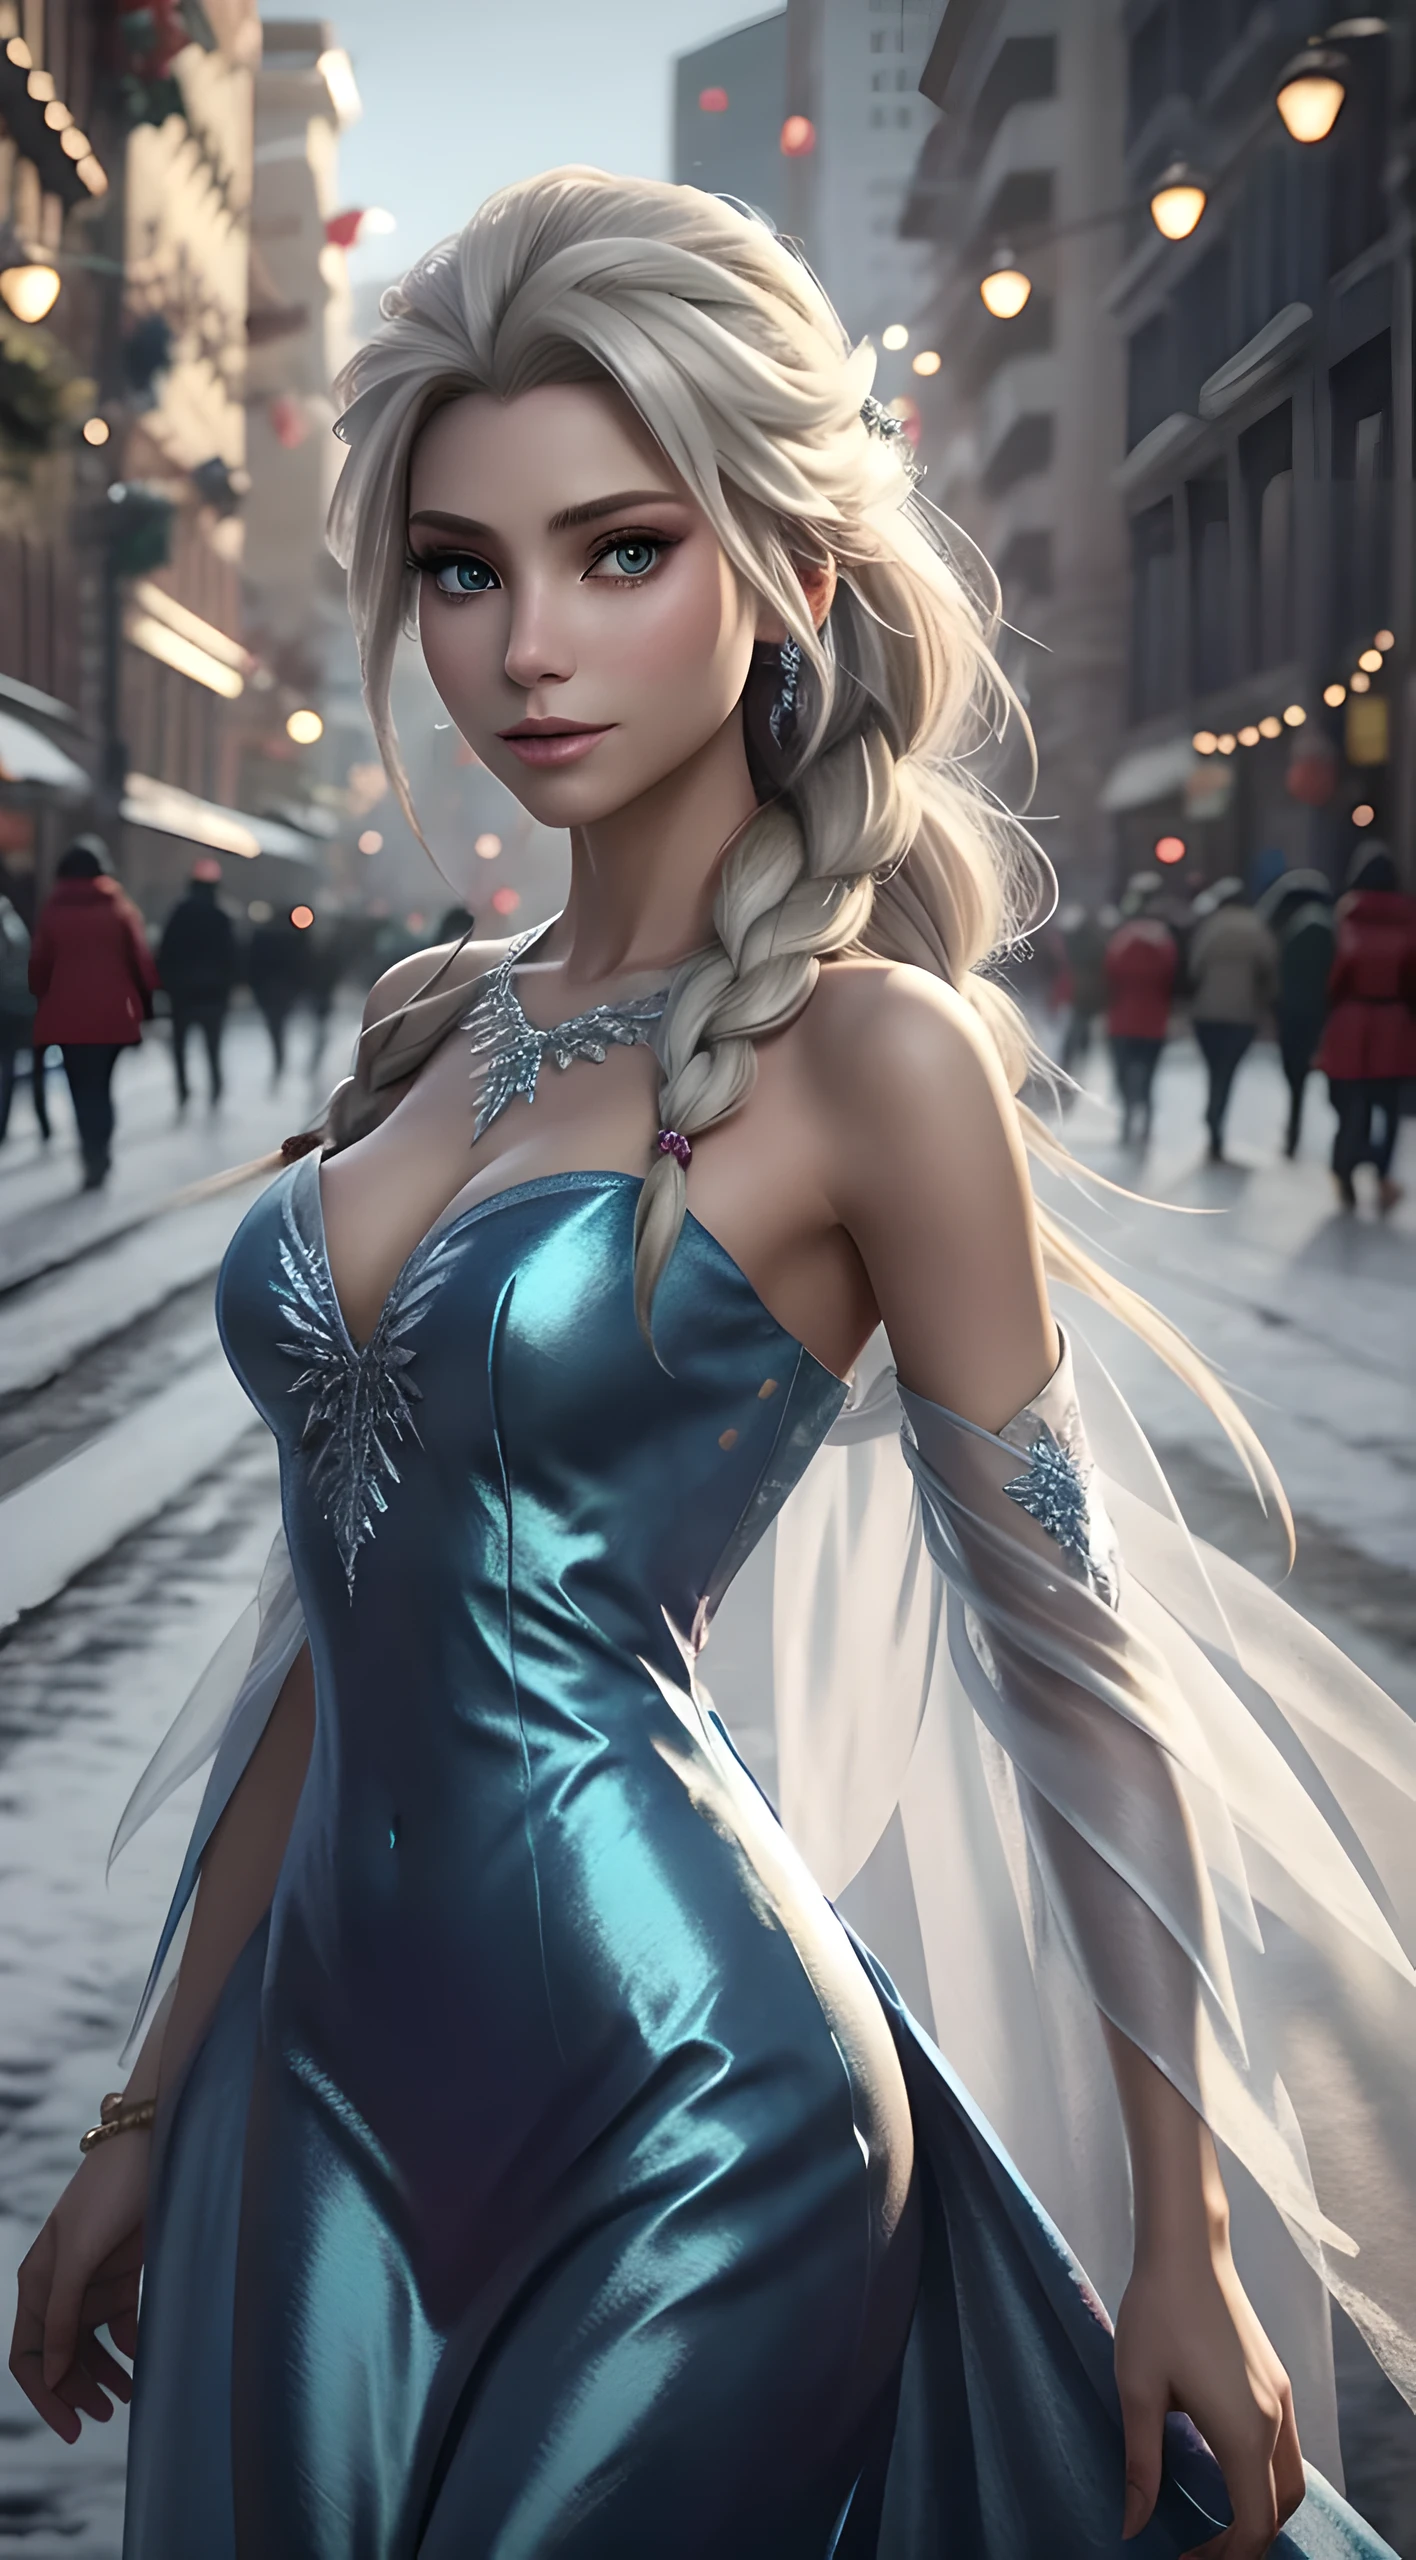 Создайте реалистичное изображение Эльзы из «Холодного сердца»., настоящий персонаж Эльза из Холодного сердца, одеться по-современному на Новый год . Платье с текстурой HDR 8K, визуальный рендер Эльзы, Эльза должна быть в красном, нежное длинное платье , вместе с новогодней шапкой Санты. Платье должно быть стильным и подходить принцессе.. Новогоднее платье с настоящими перьями и кистями.